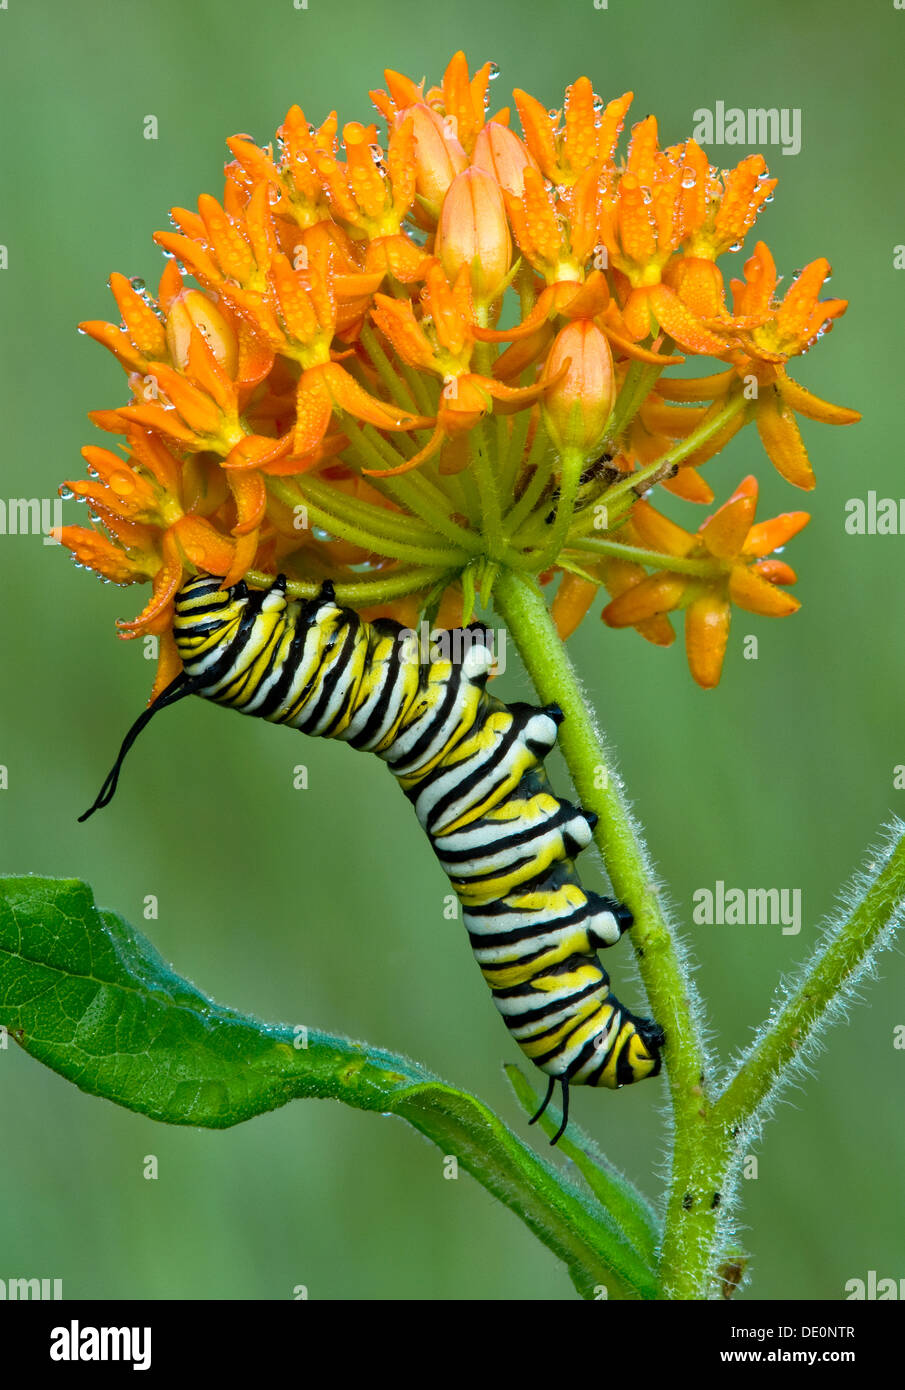 Caterpidanaus plexippus monarque alimentation caterpillar sur la pollinisation des fleurs Asclépiade Asclepias tuberosa E USA Banque D'Images